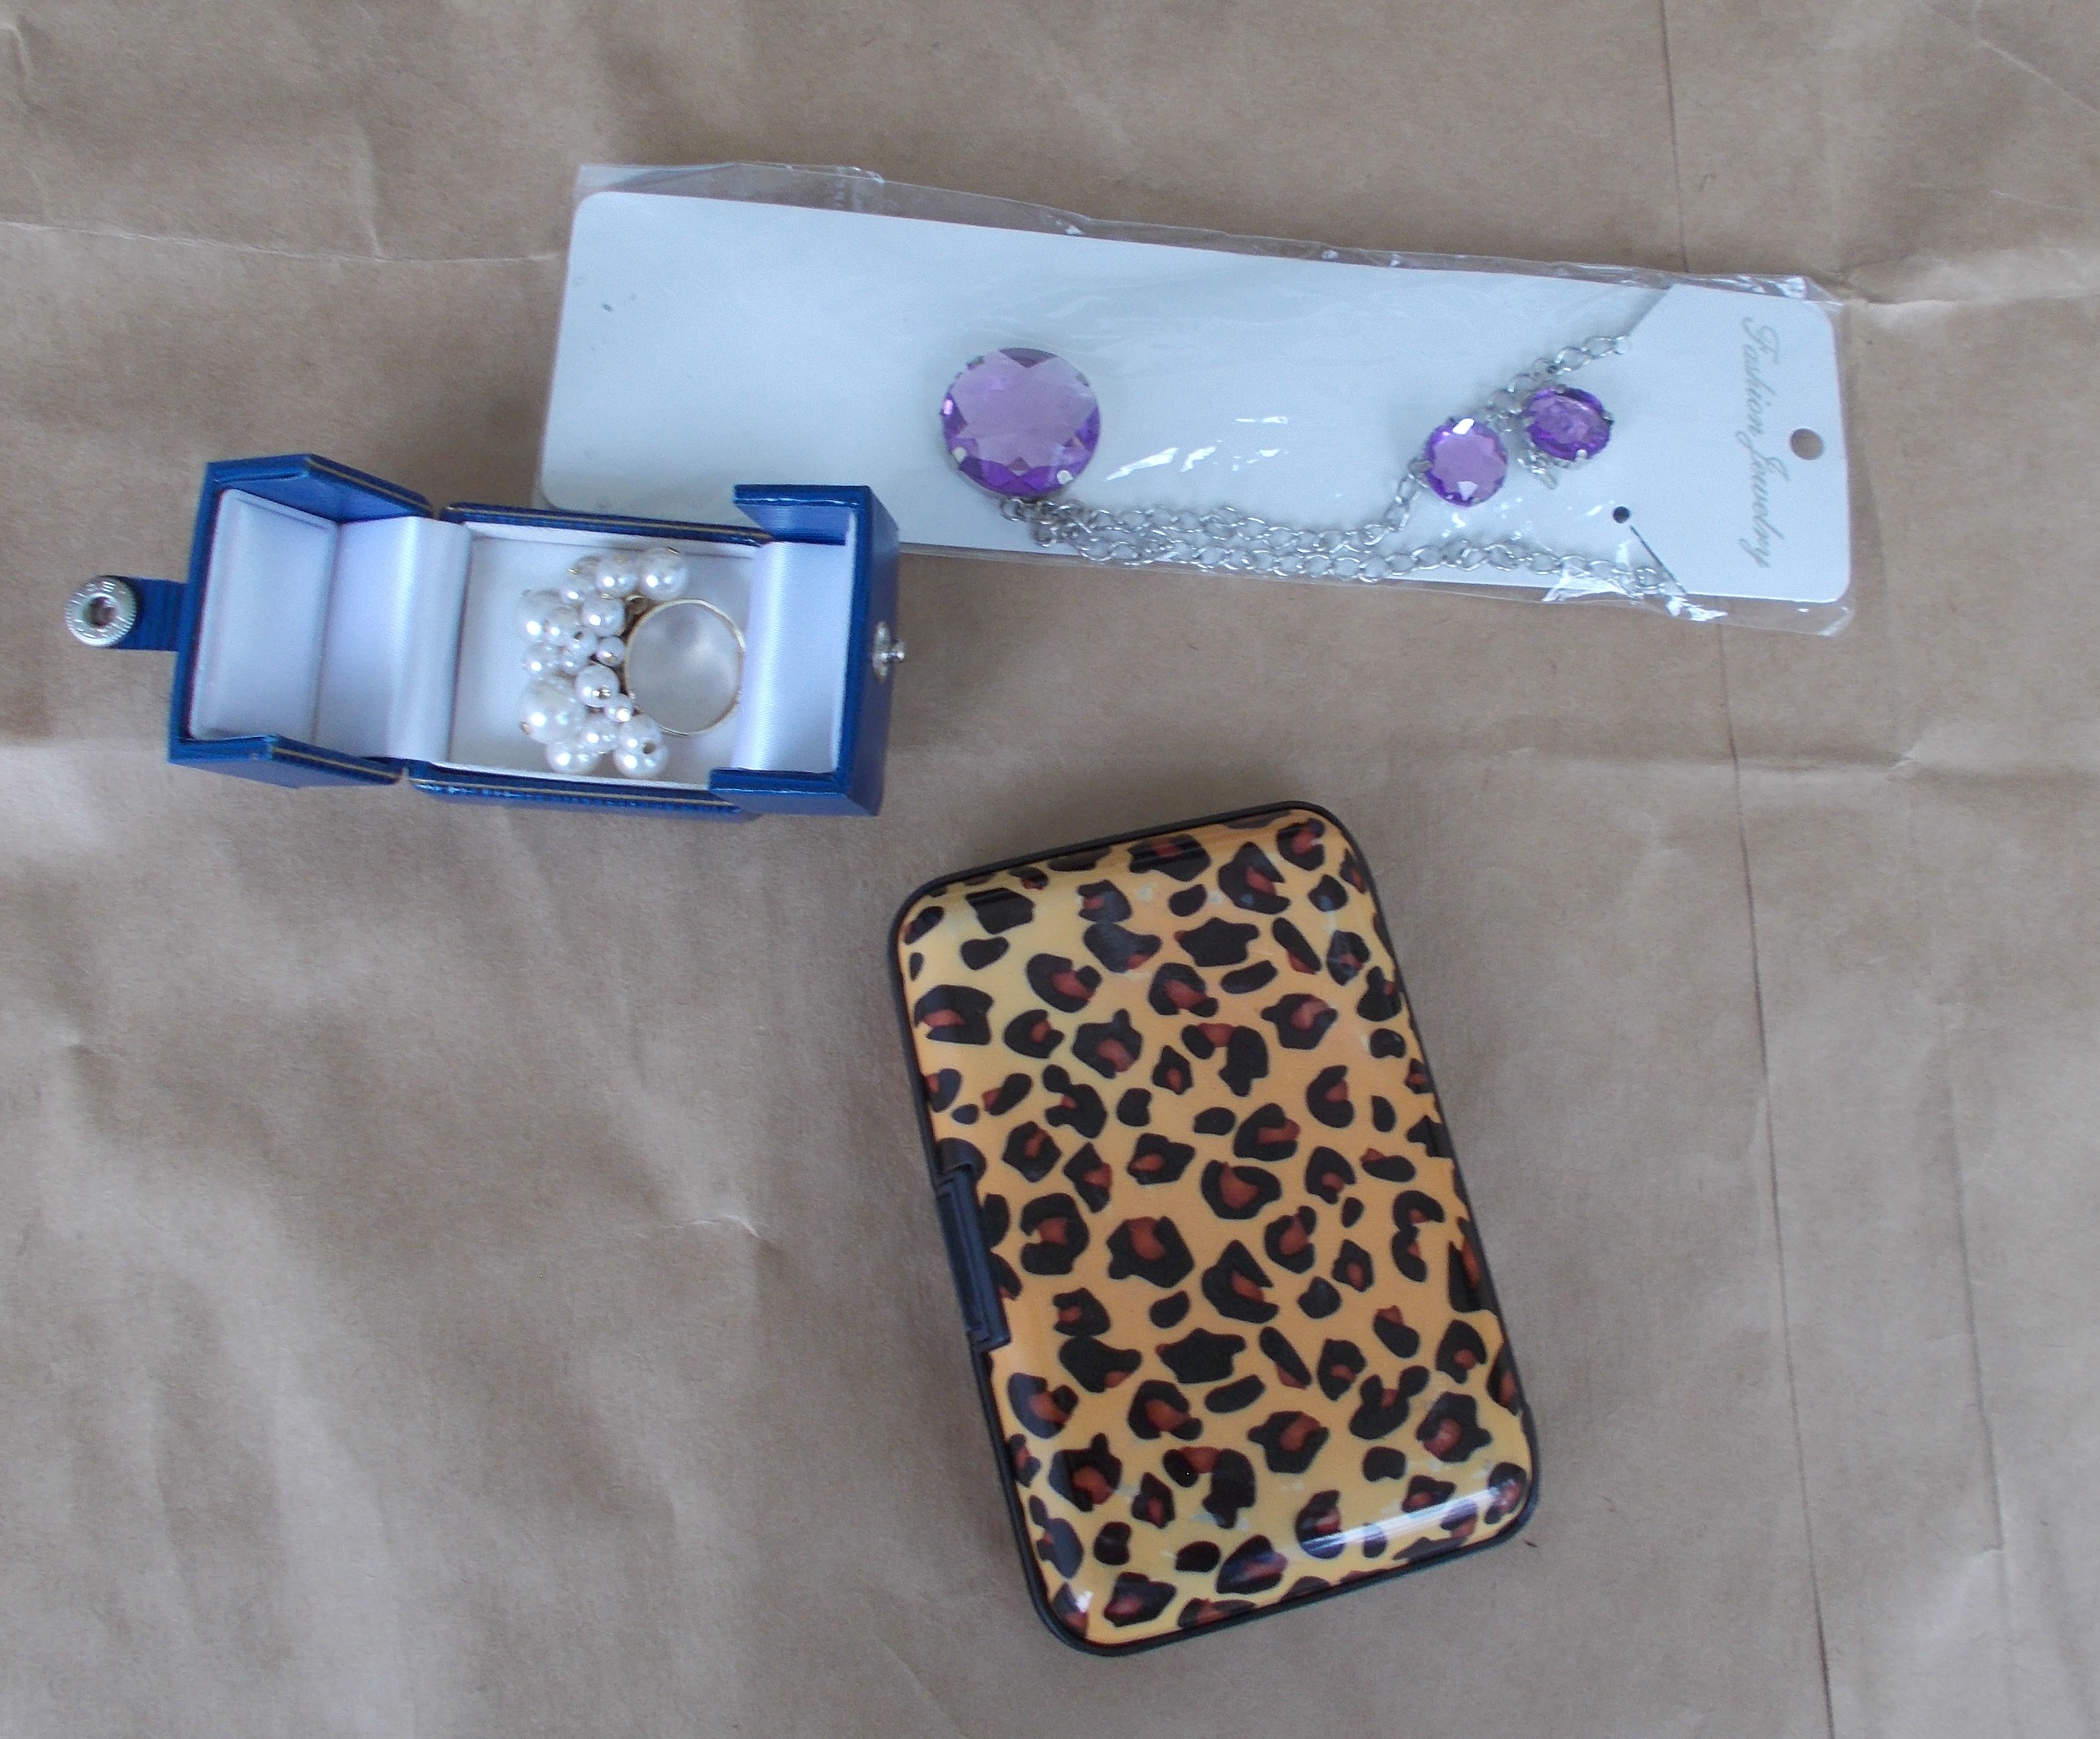 Ékszerek: Fashion Jewelry Nyaklánc és egy gyűrű meg egy irattartó

Jewelry Nyaklánc bontatlna csomag
Gyürű gyönyökkel
Irattartó leopárd mintával


